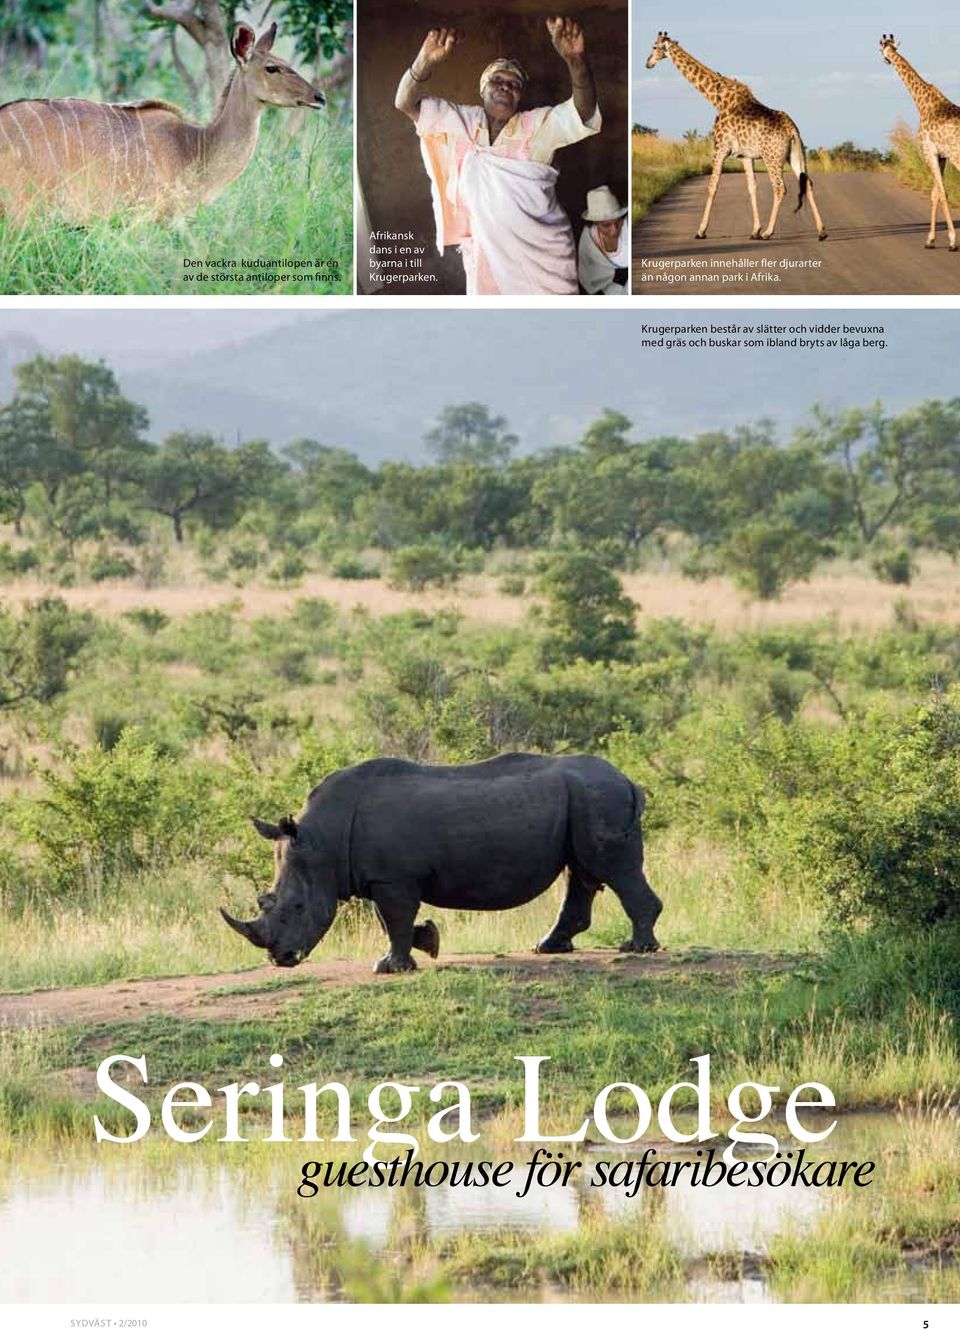 Krugerparken innehåller fler djurarter än någon annan park i Afrika.